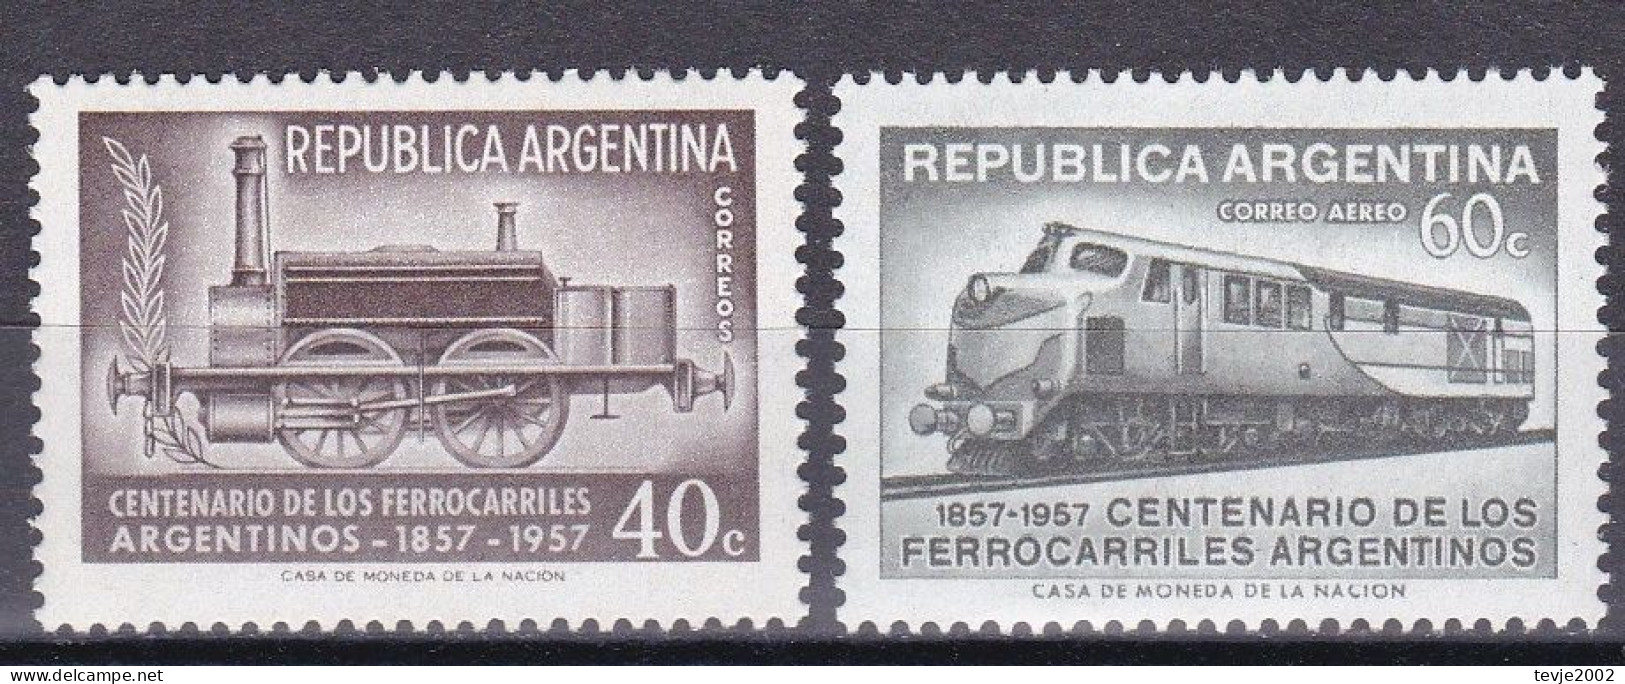 Argentinien Argentina 1957 - Mi.Nr. 659 - 660 - Postfrisch MNH - Eisenbahnen Railways - Trains